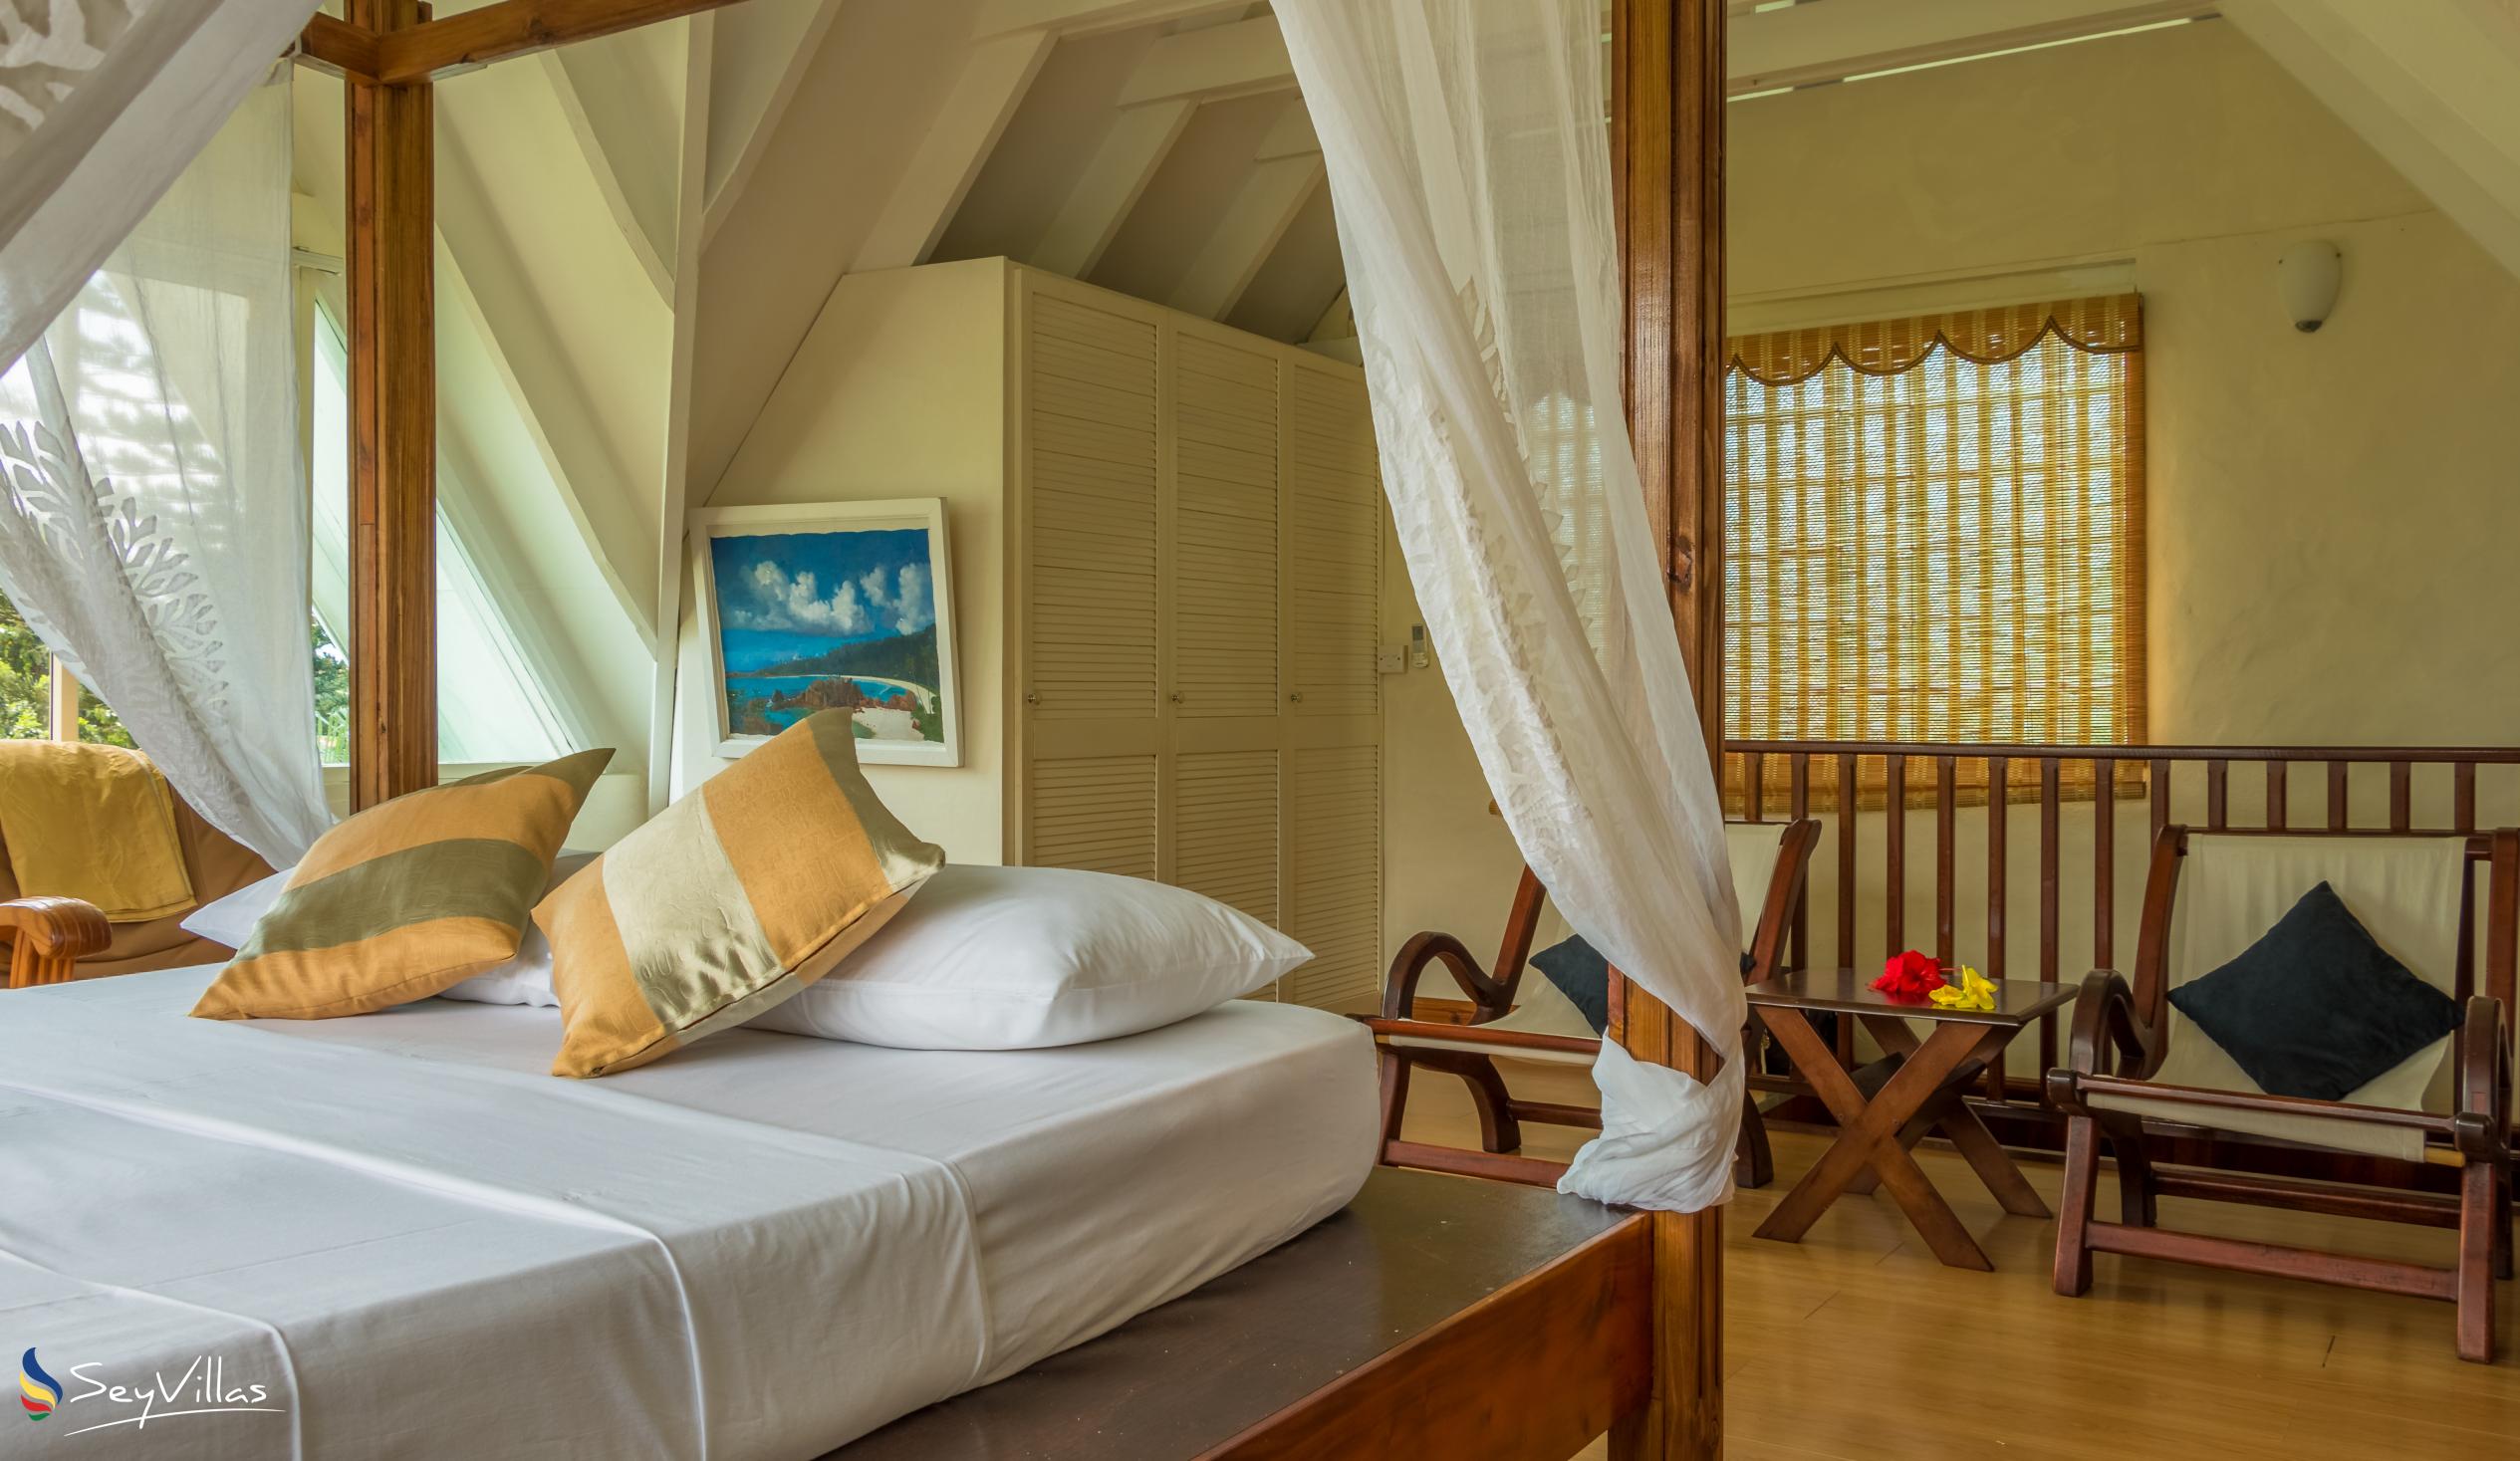 Photo 75: Lemongrass Lodge - Apartment Palmier - Mahé (Seychelles)